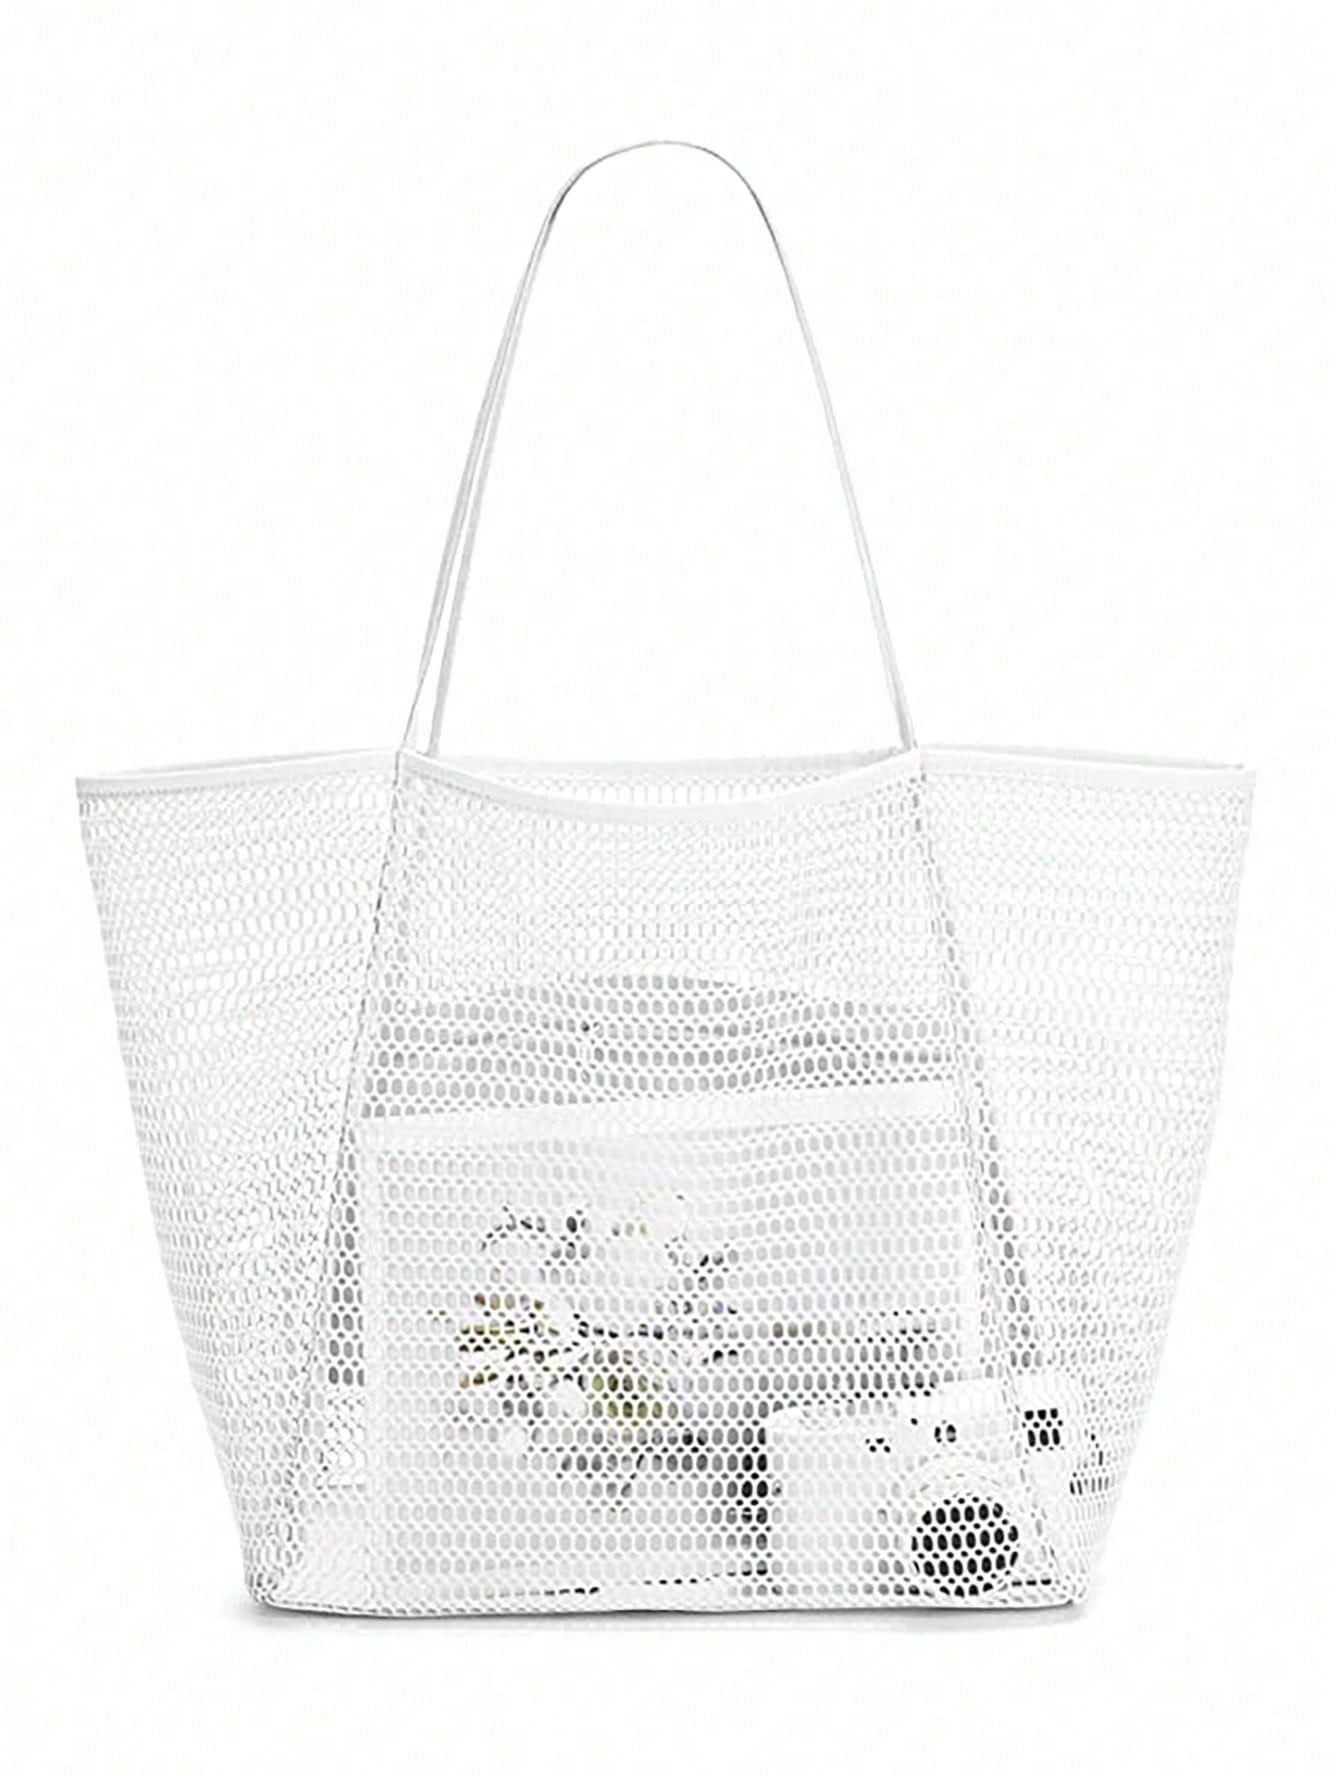 Пляжная сетчатая сумка-тоут, белый сумка с принтом русской куклы женская повседневная сумка женская сумка на плечо складная сумка для покупок пляжная сумка сумка